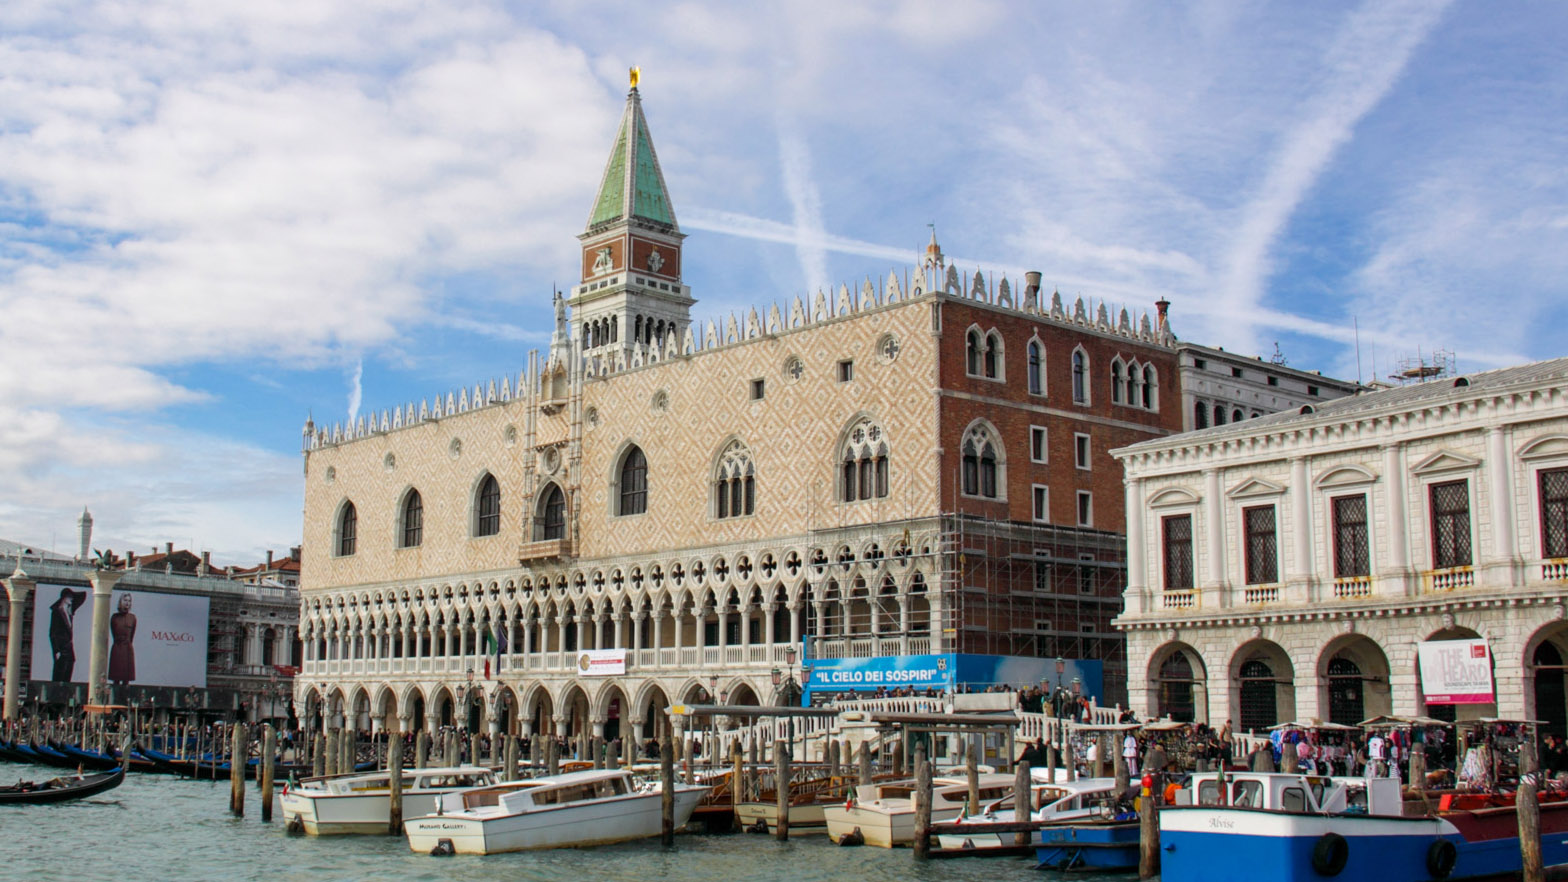 Ingressos antecipados para o Palácio Ducal em Veneza